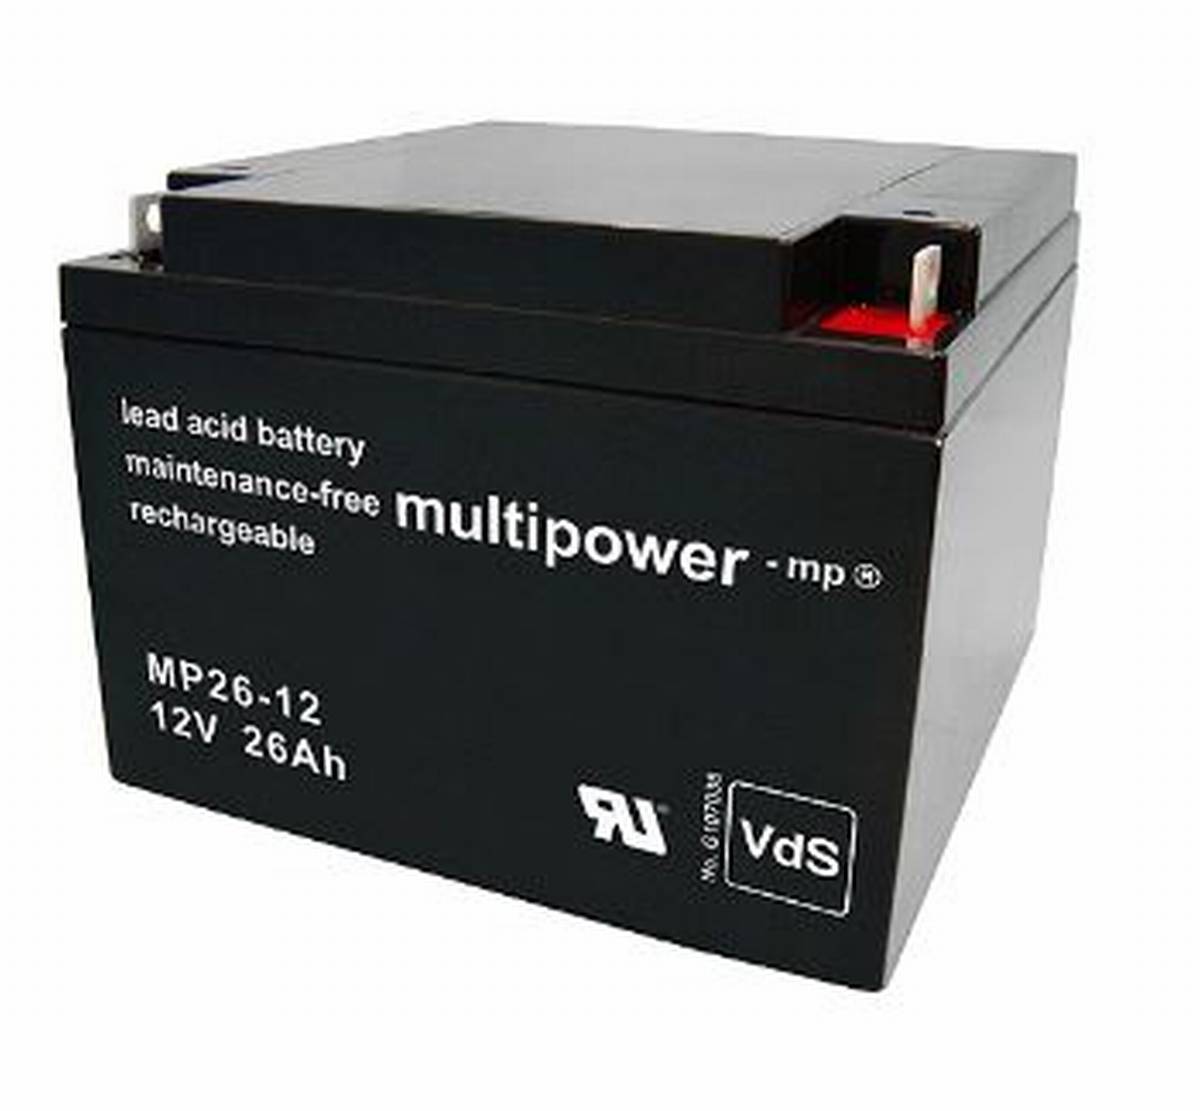 Multipower MP26-12 12V 26Ah batteria al piombo AGM con approvazione VdS